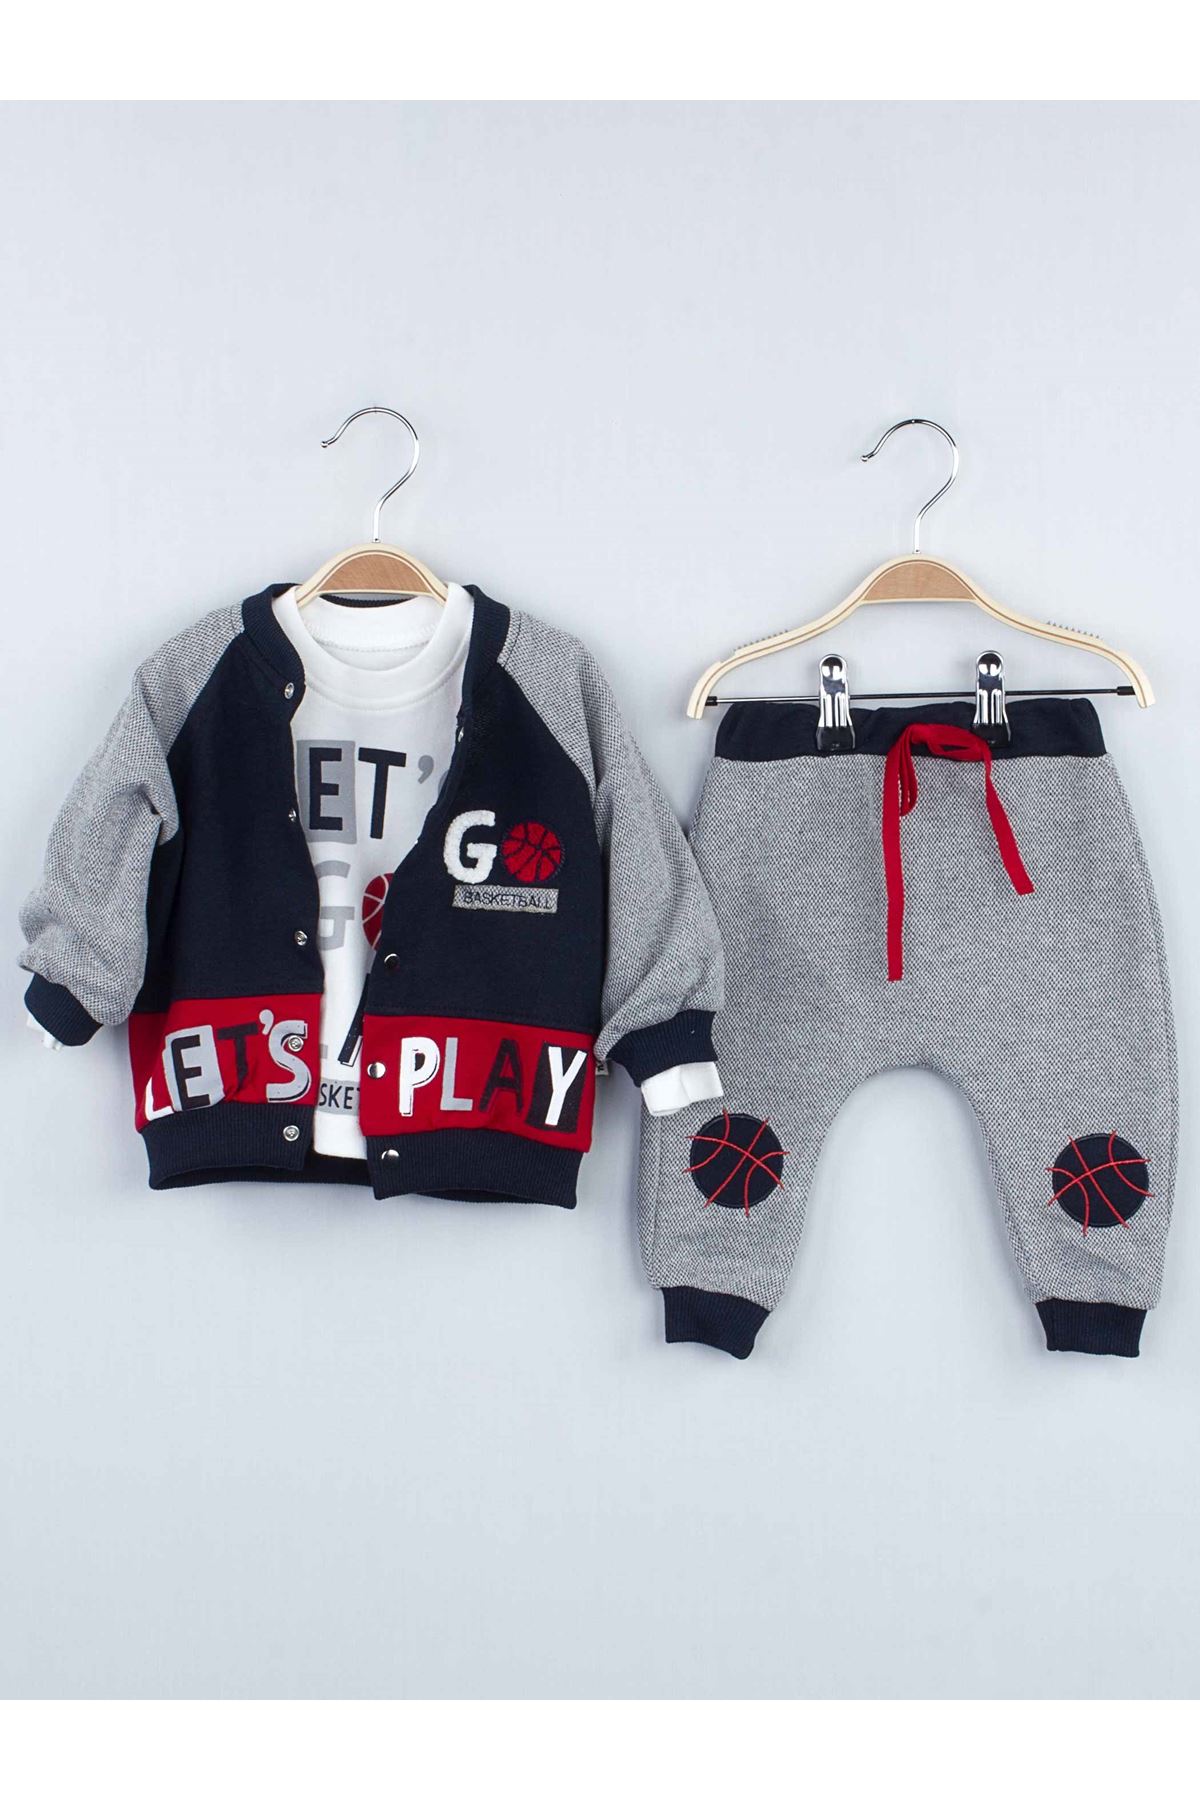 geçit öncel kömür  Modakids - Çocuk ve Bebek Giyim-Kırmızı Kışlık Erkek Bebek 3 lü Takım- Moda  Kids